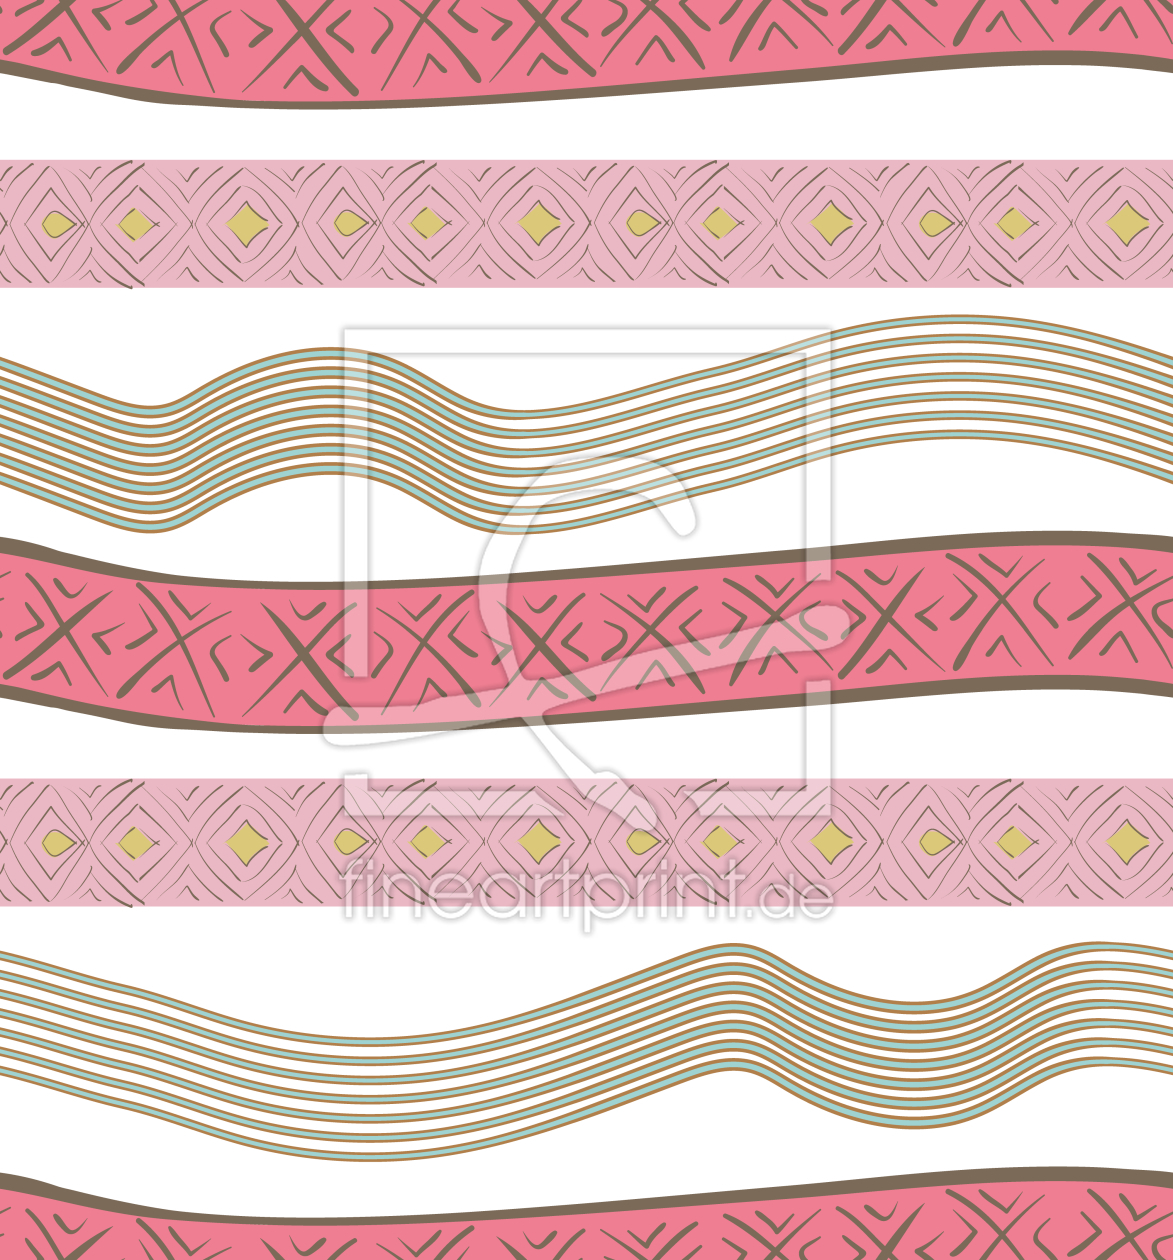 Bild-Nr.: 9007392 Ethno Bänder erstellt von patterndesigns-com